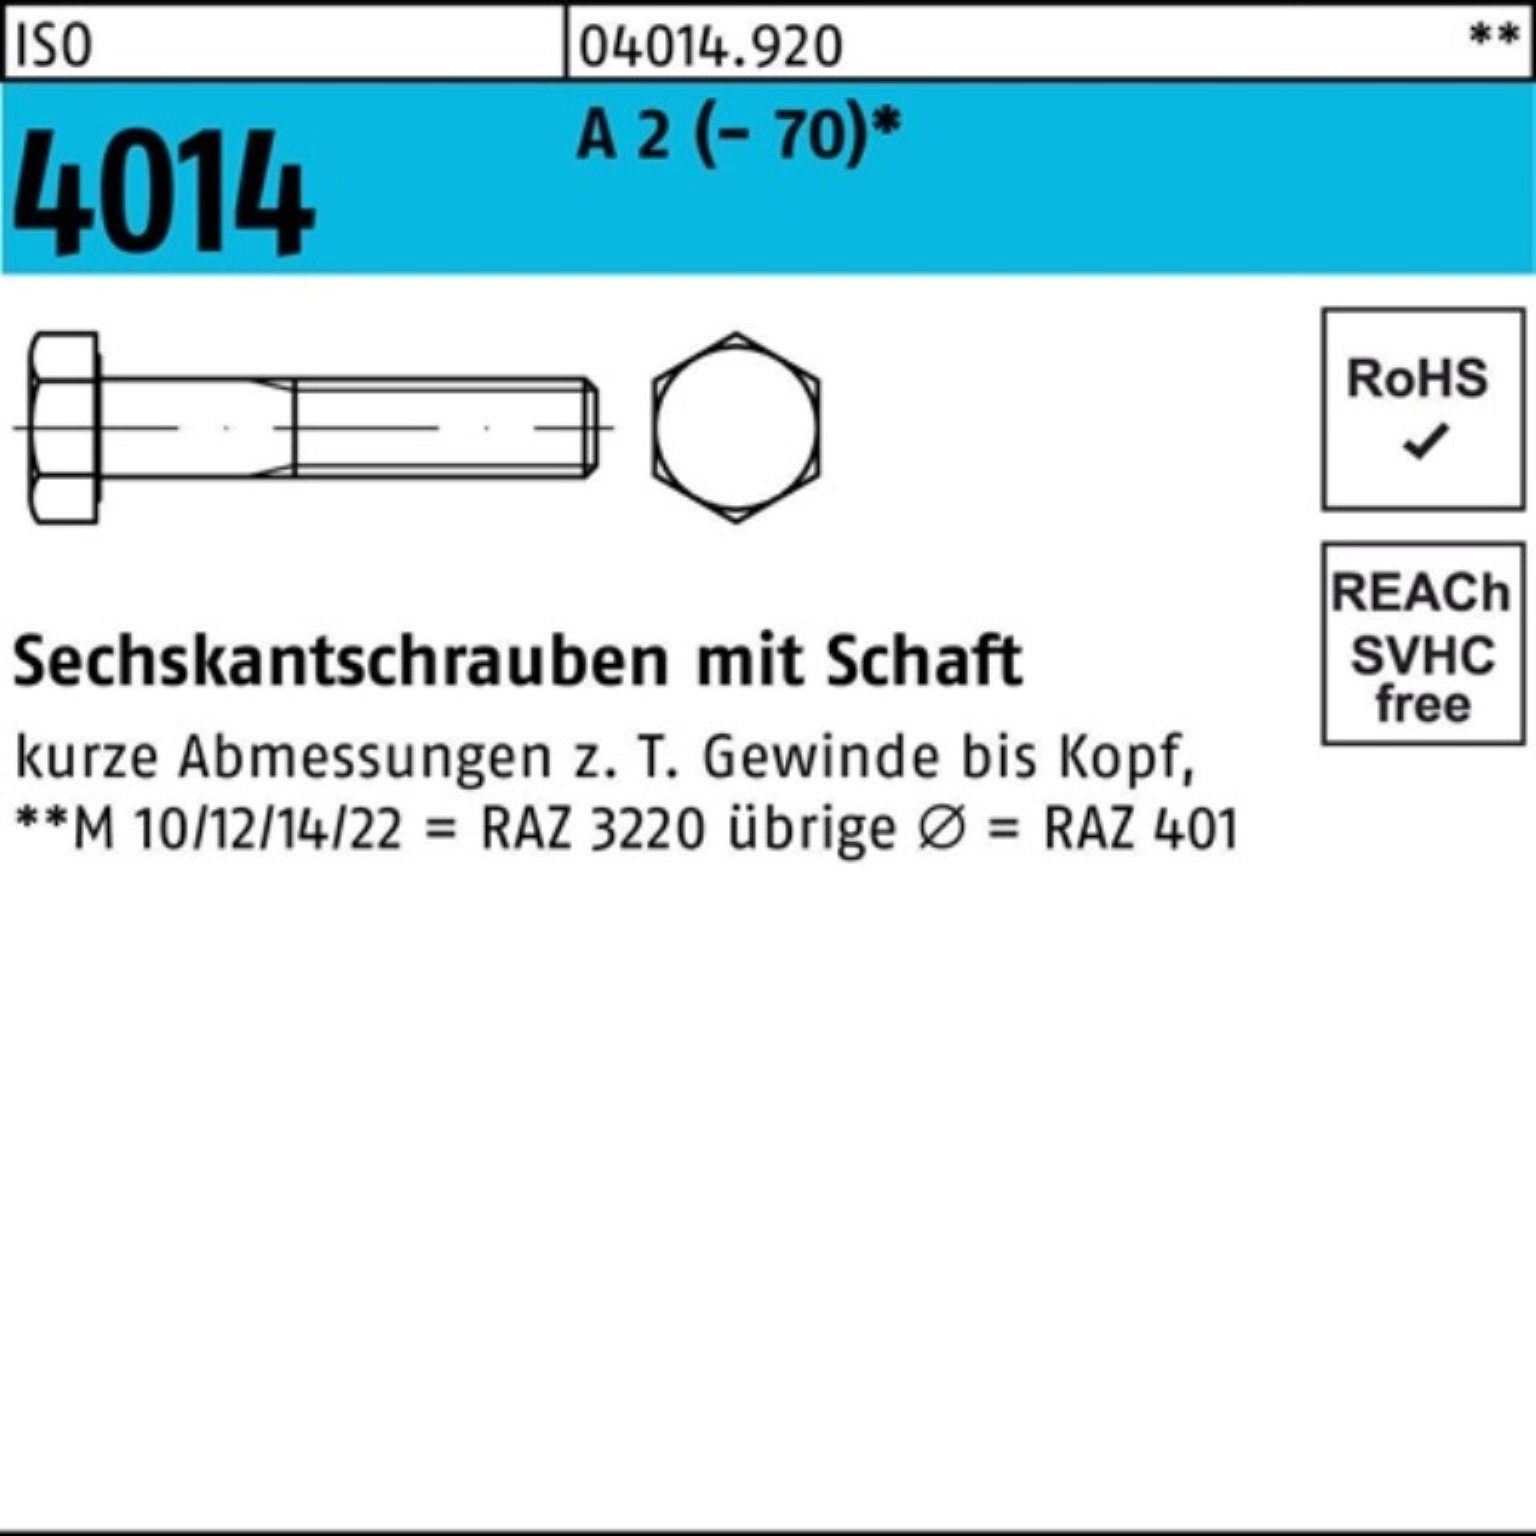 Bufab Sechskantschraube 100er Pack Sechskantschraube ISO 4014 Schaft M6x 80 A 2 (70) 100 St